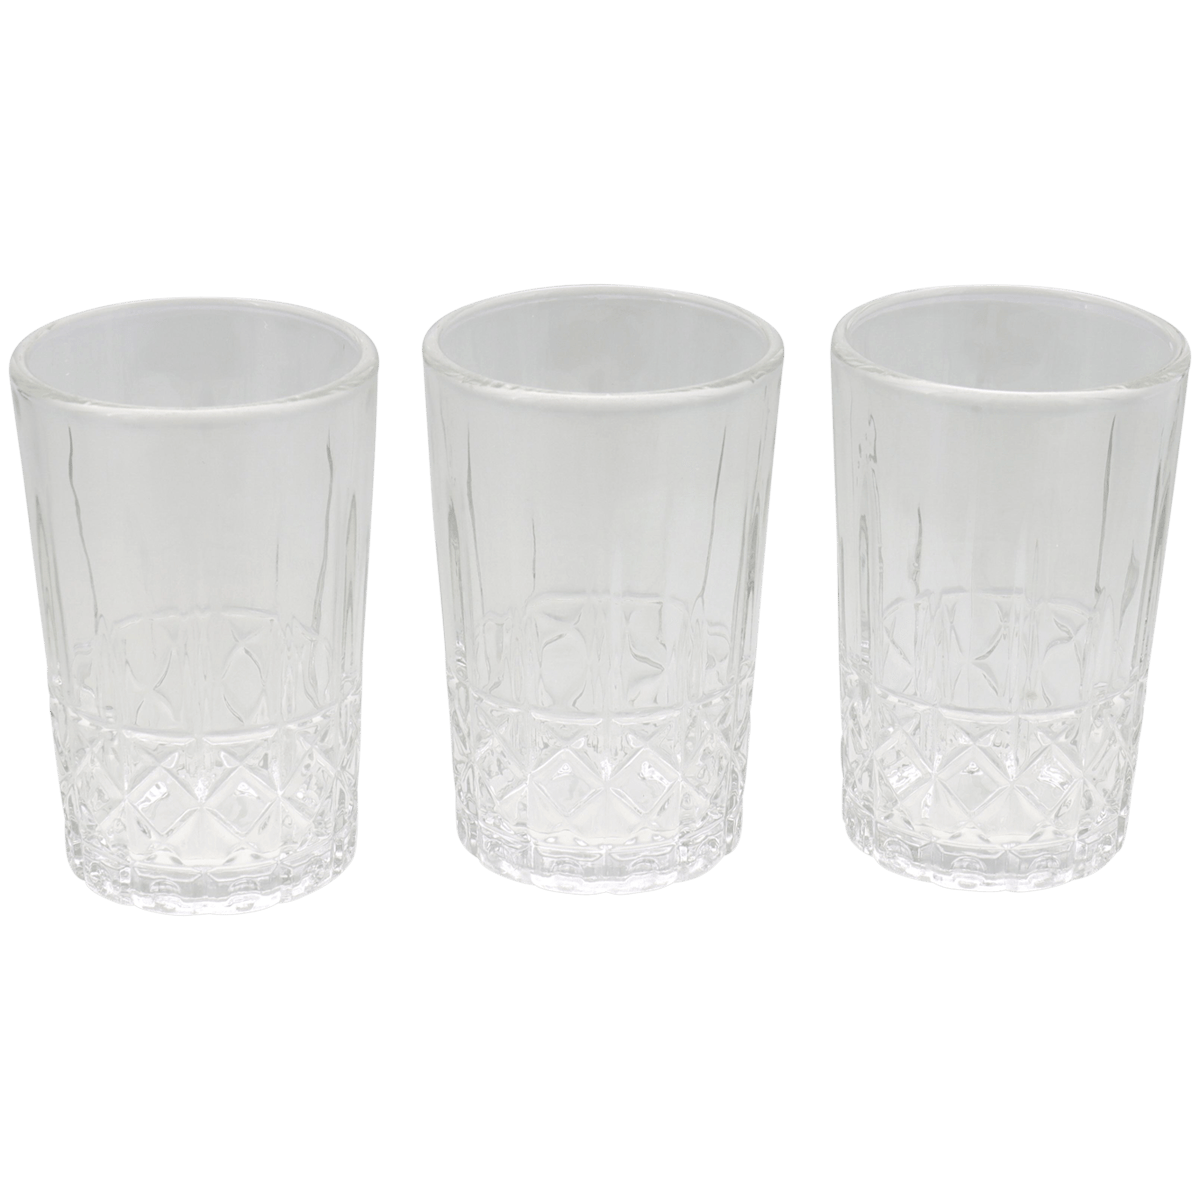 Water-/whiskyglas